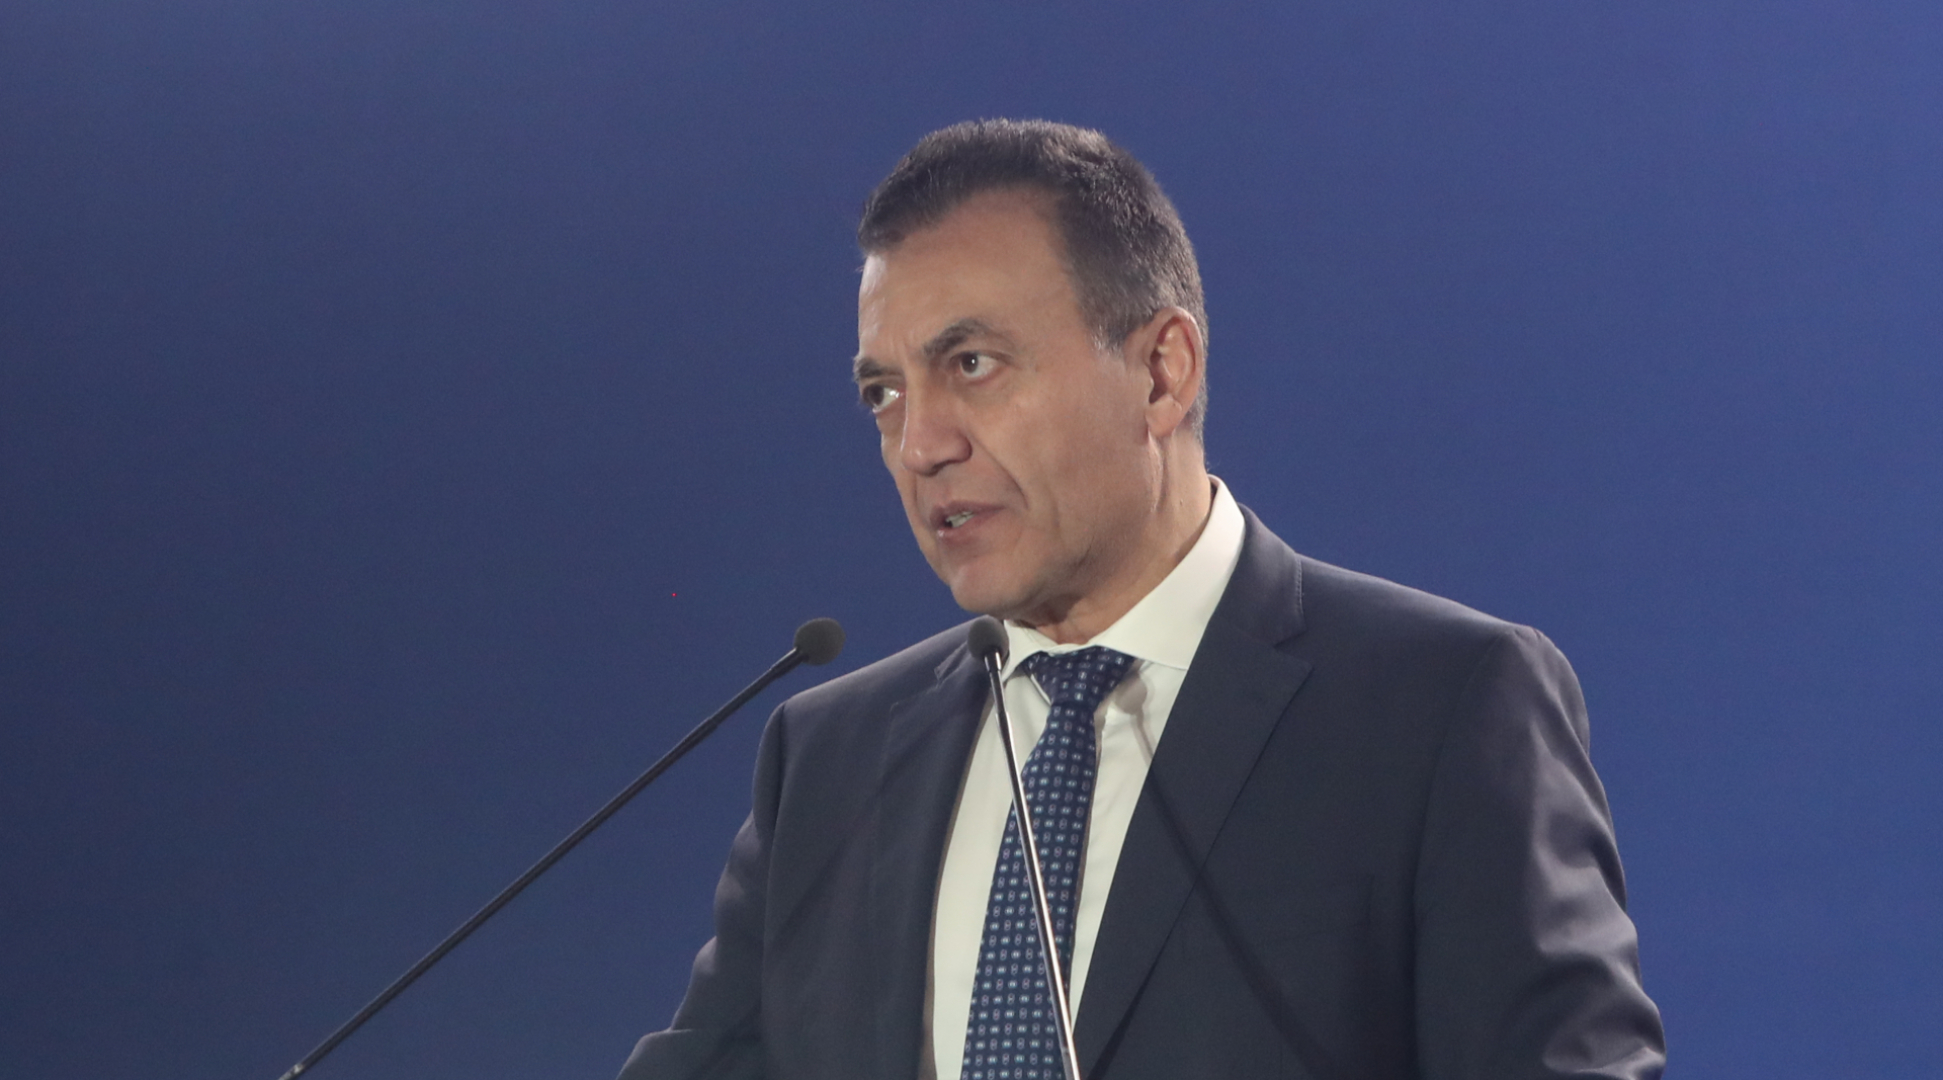 Ο αναπληρωτής υπουργός Αθλητισμού, Γιάννης Βρούτσης, πραγματοποιεί δηλώσεις